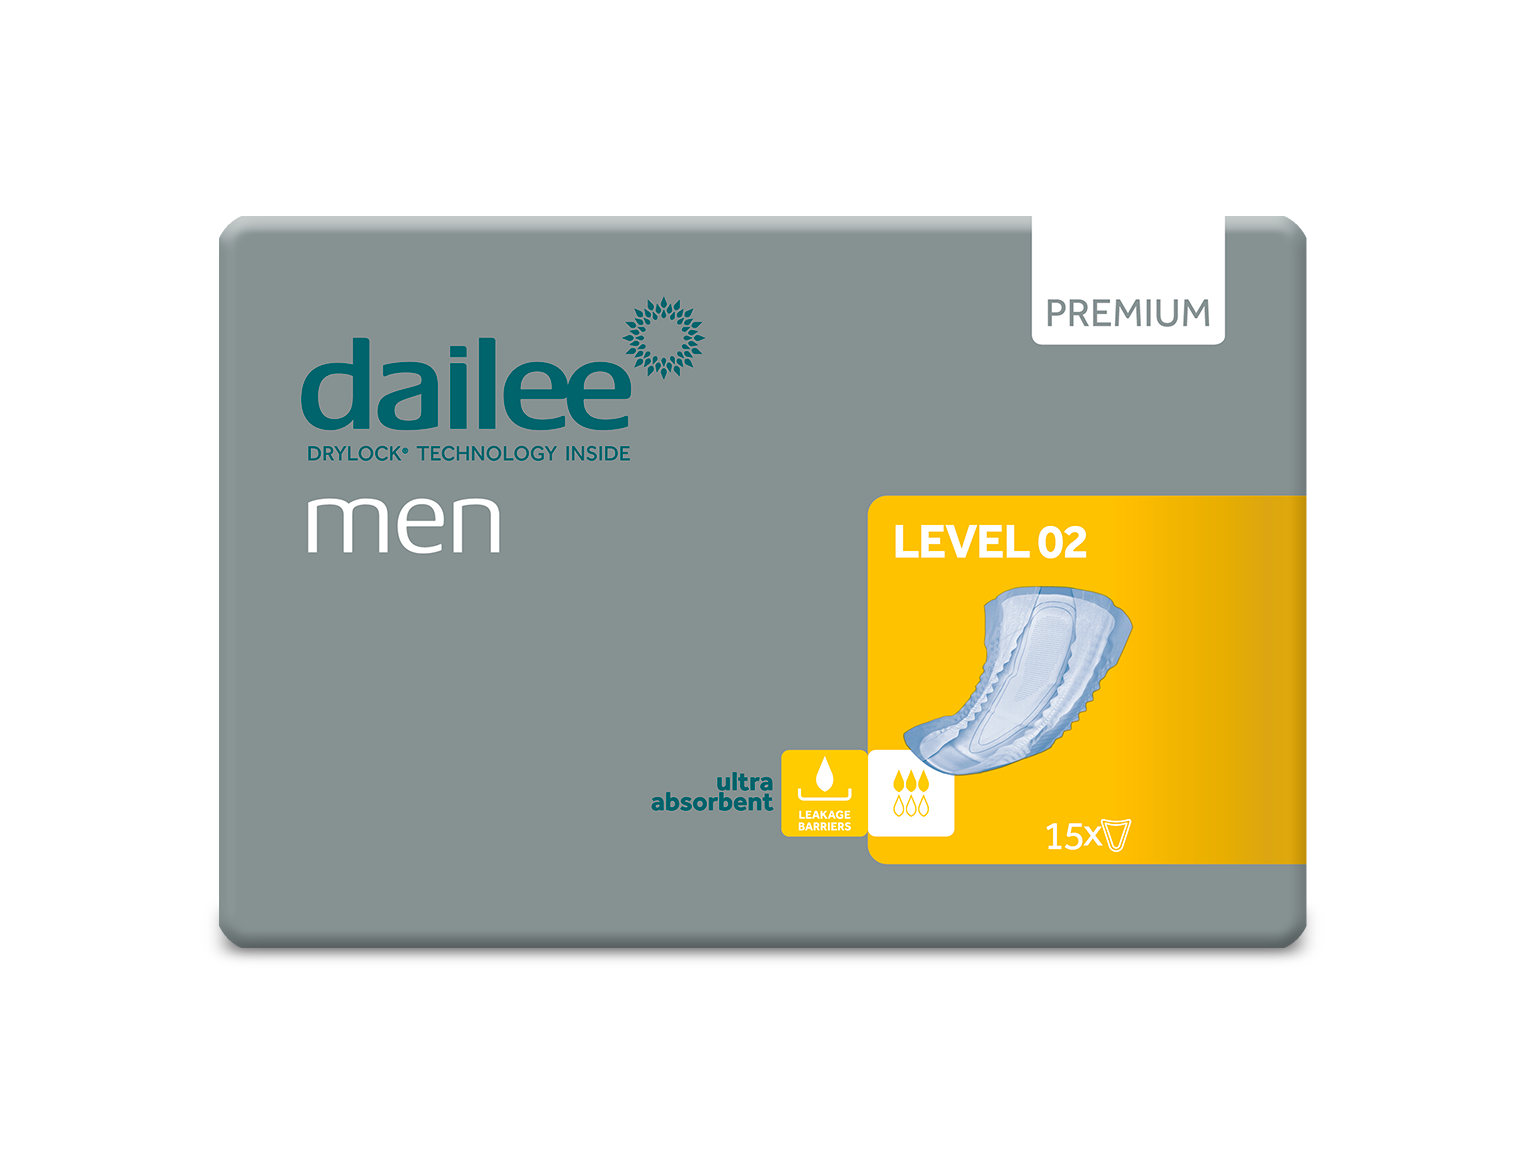 dailee_men_premium_level_02_pack